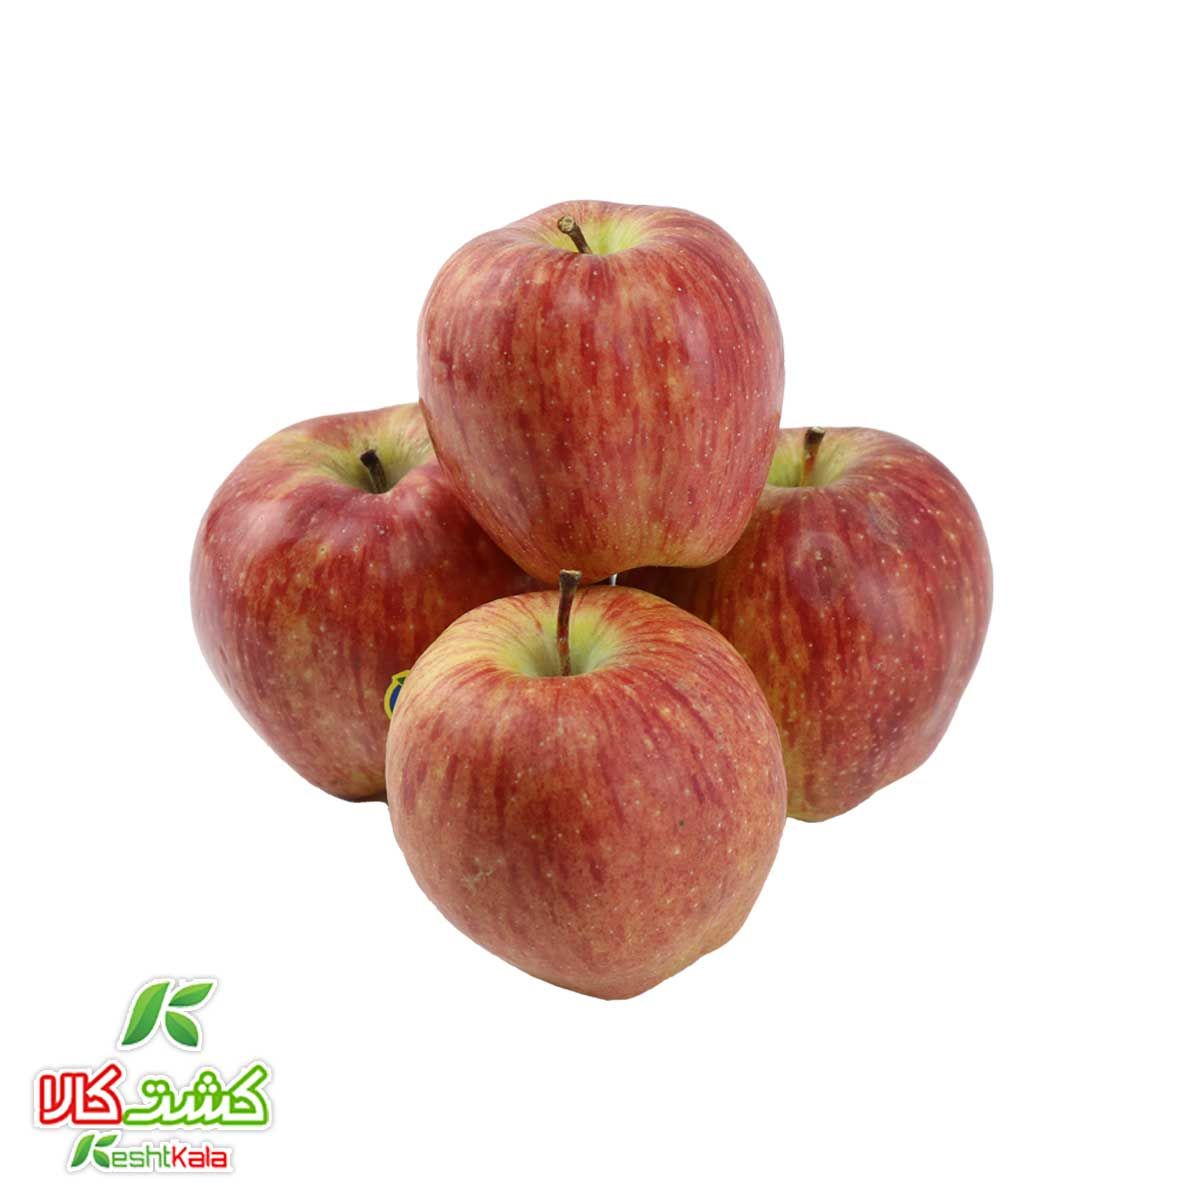 سیب قرمز کشت کالا کیسه ای 5 کیلوگرمی